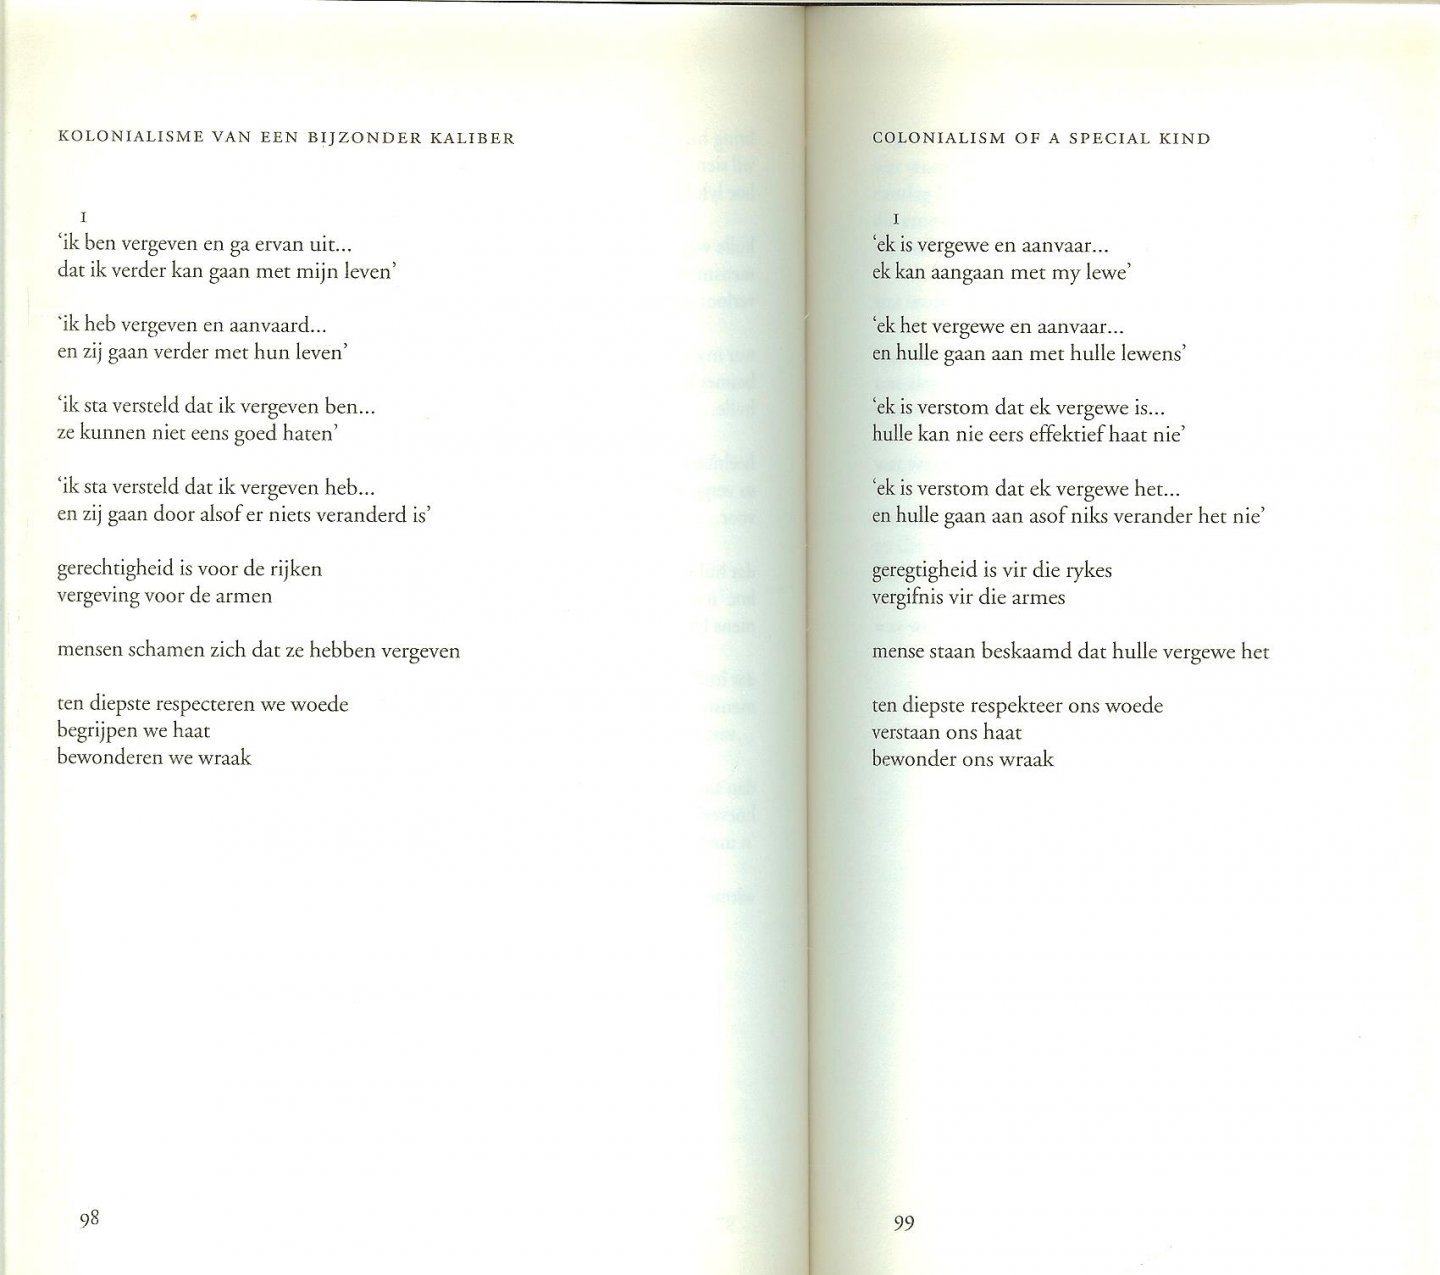 Krog, Antjie [1952]  tweetalige bundel  Vertaald door Robert Dorsman en Jan van der Haar  Omslagontwerp  Ron van Roon  Foto Auteur  Mieke Meesen - Lijfkreet  .. Gedichten